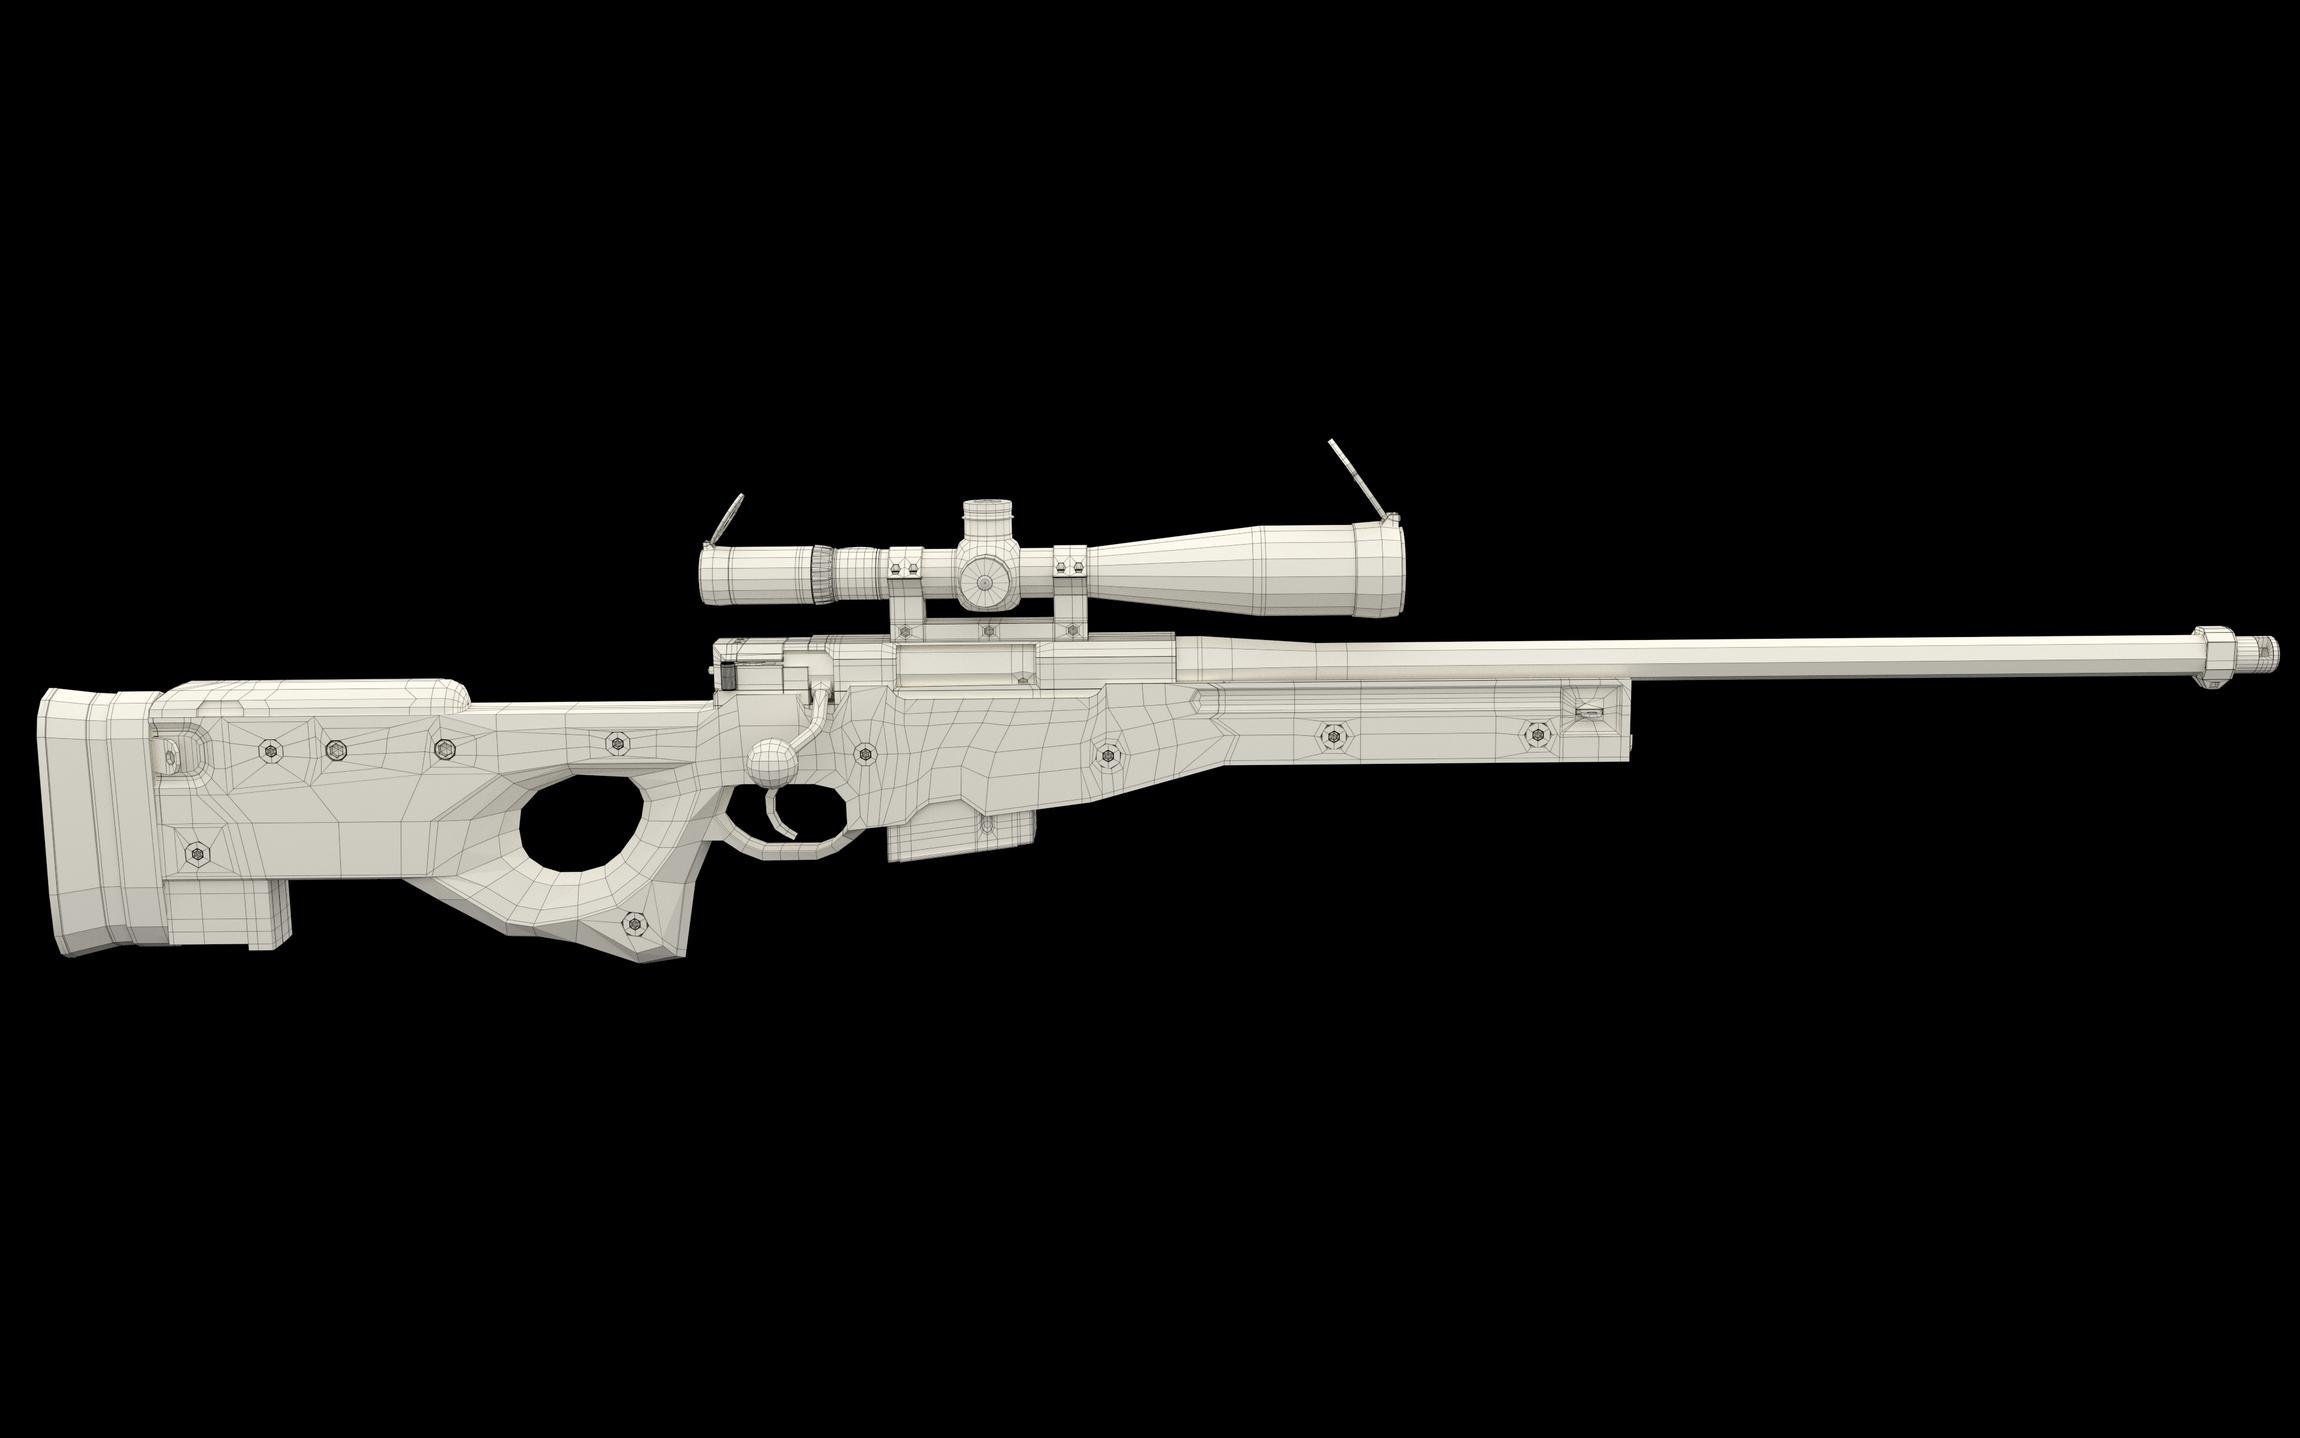 Белый авп. Снайперская винтовка l96a1 референс. АВМ снайперская винтовка. L96a1 50bmg. Снайперская винтовка из стандофф 2 AWM.